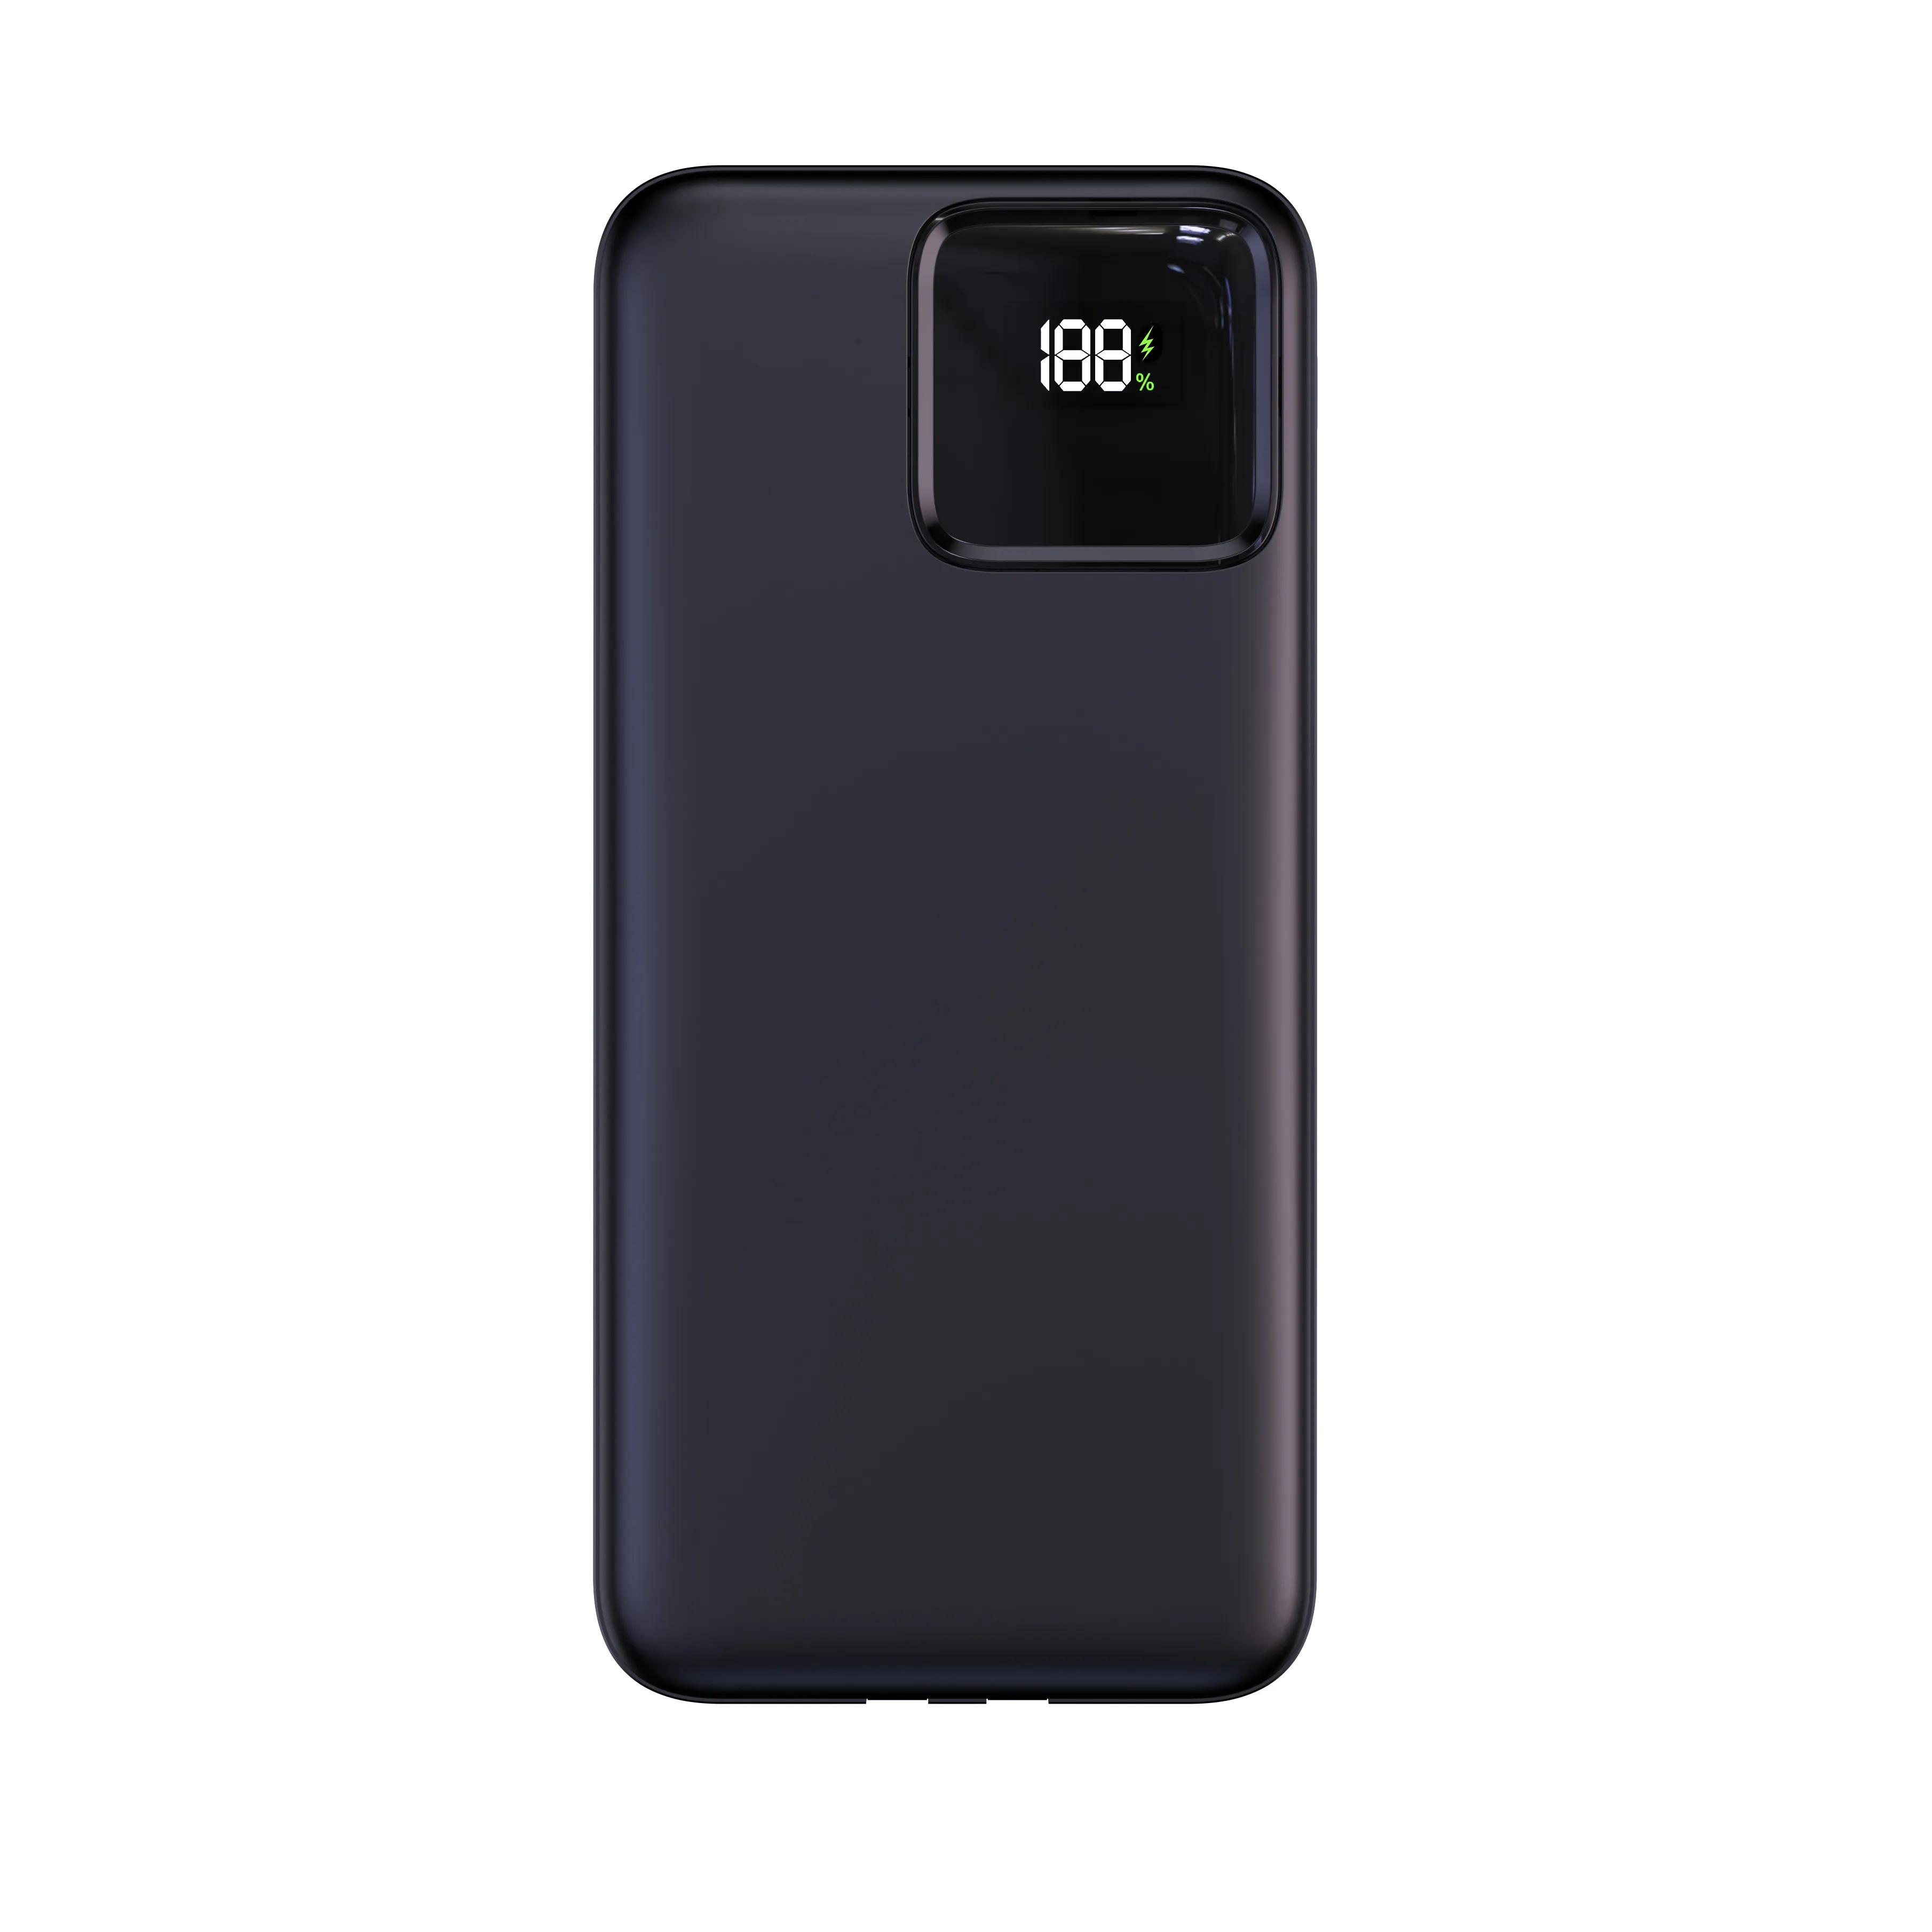 हेज़ुओ फोन चार्जर मोबाइल पावर बैंक ली-पॉलिमर बैटरी यूनिवर्सल कस्टम हाई-पावर फास्ट चार्जिंग 22.5w डिजिटल डिस्प्ले 10